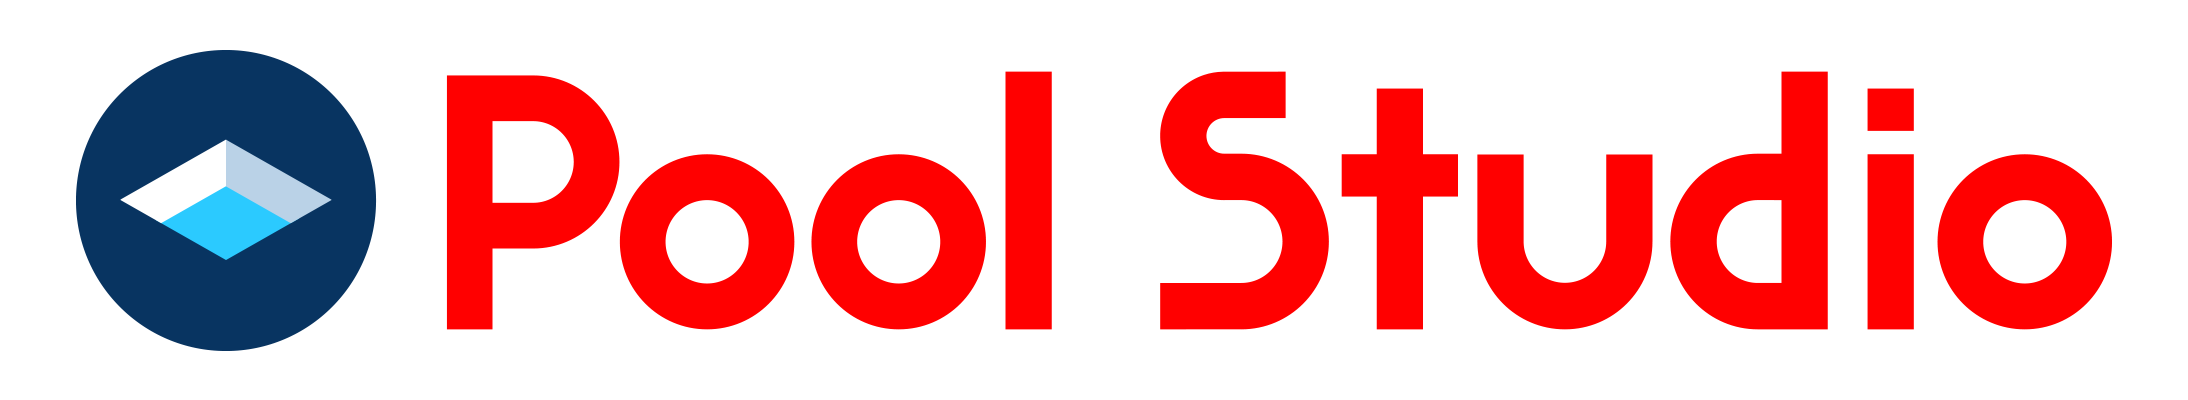 PoolStudio_logo_transparent-(1)